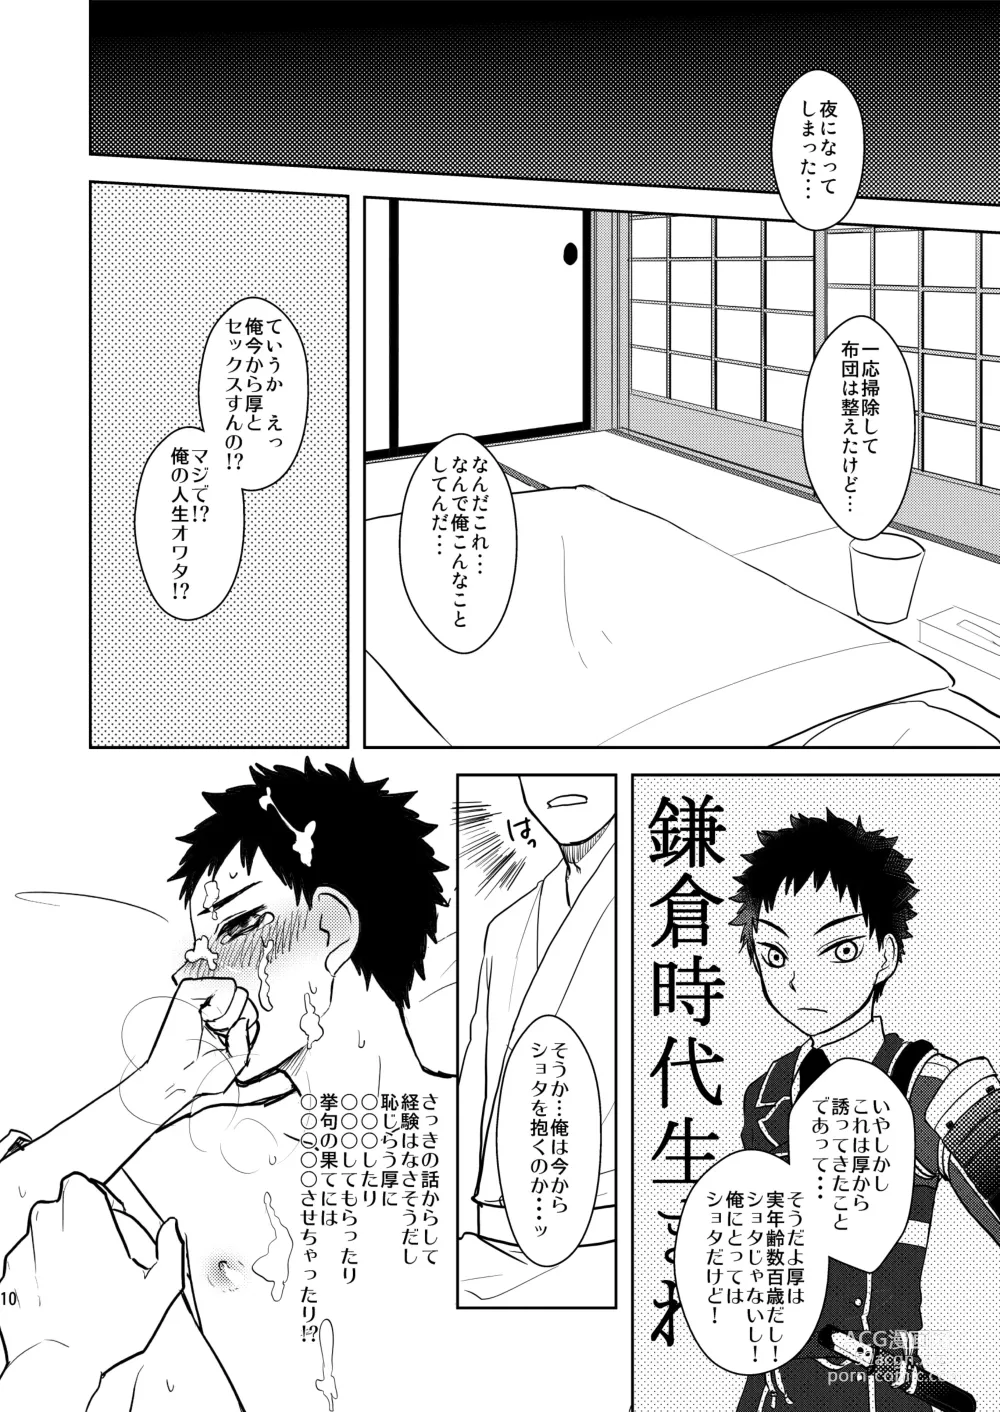 Page 9 of doujinshi Koukishinousei na Ore no Kawaii Kinji ga Yotogi o Sematte Kuru